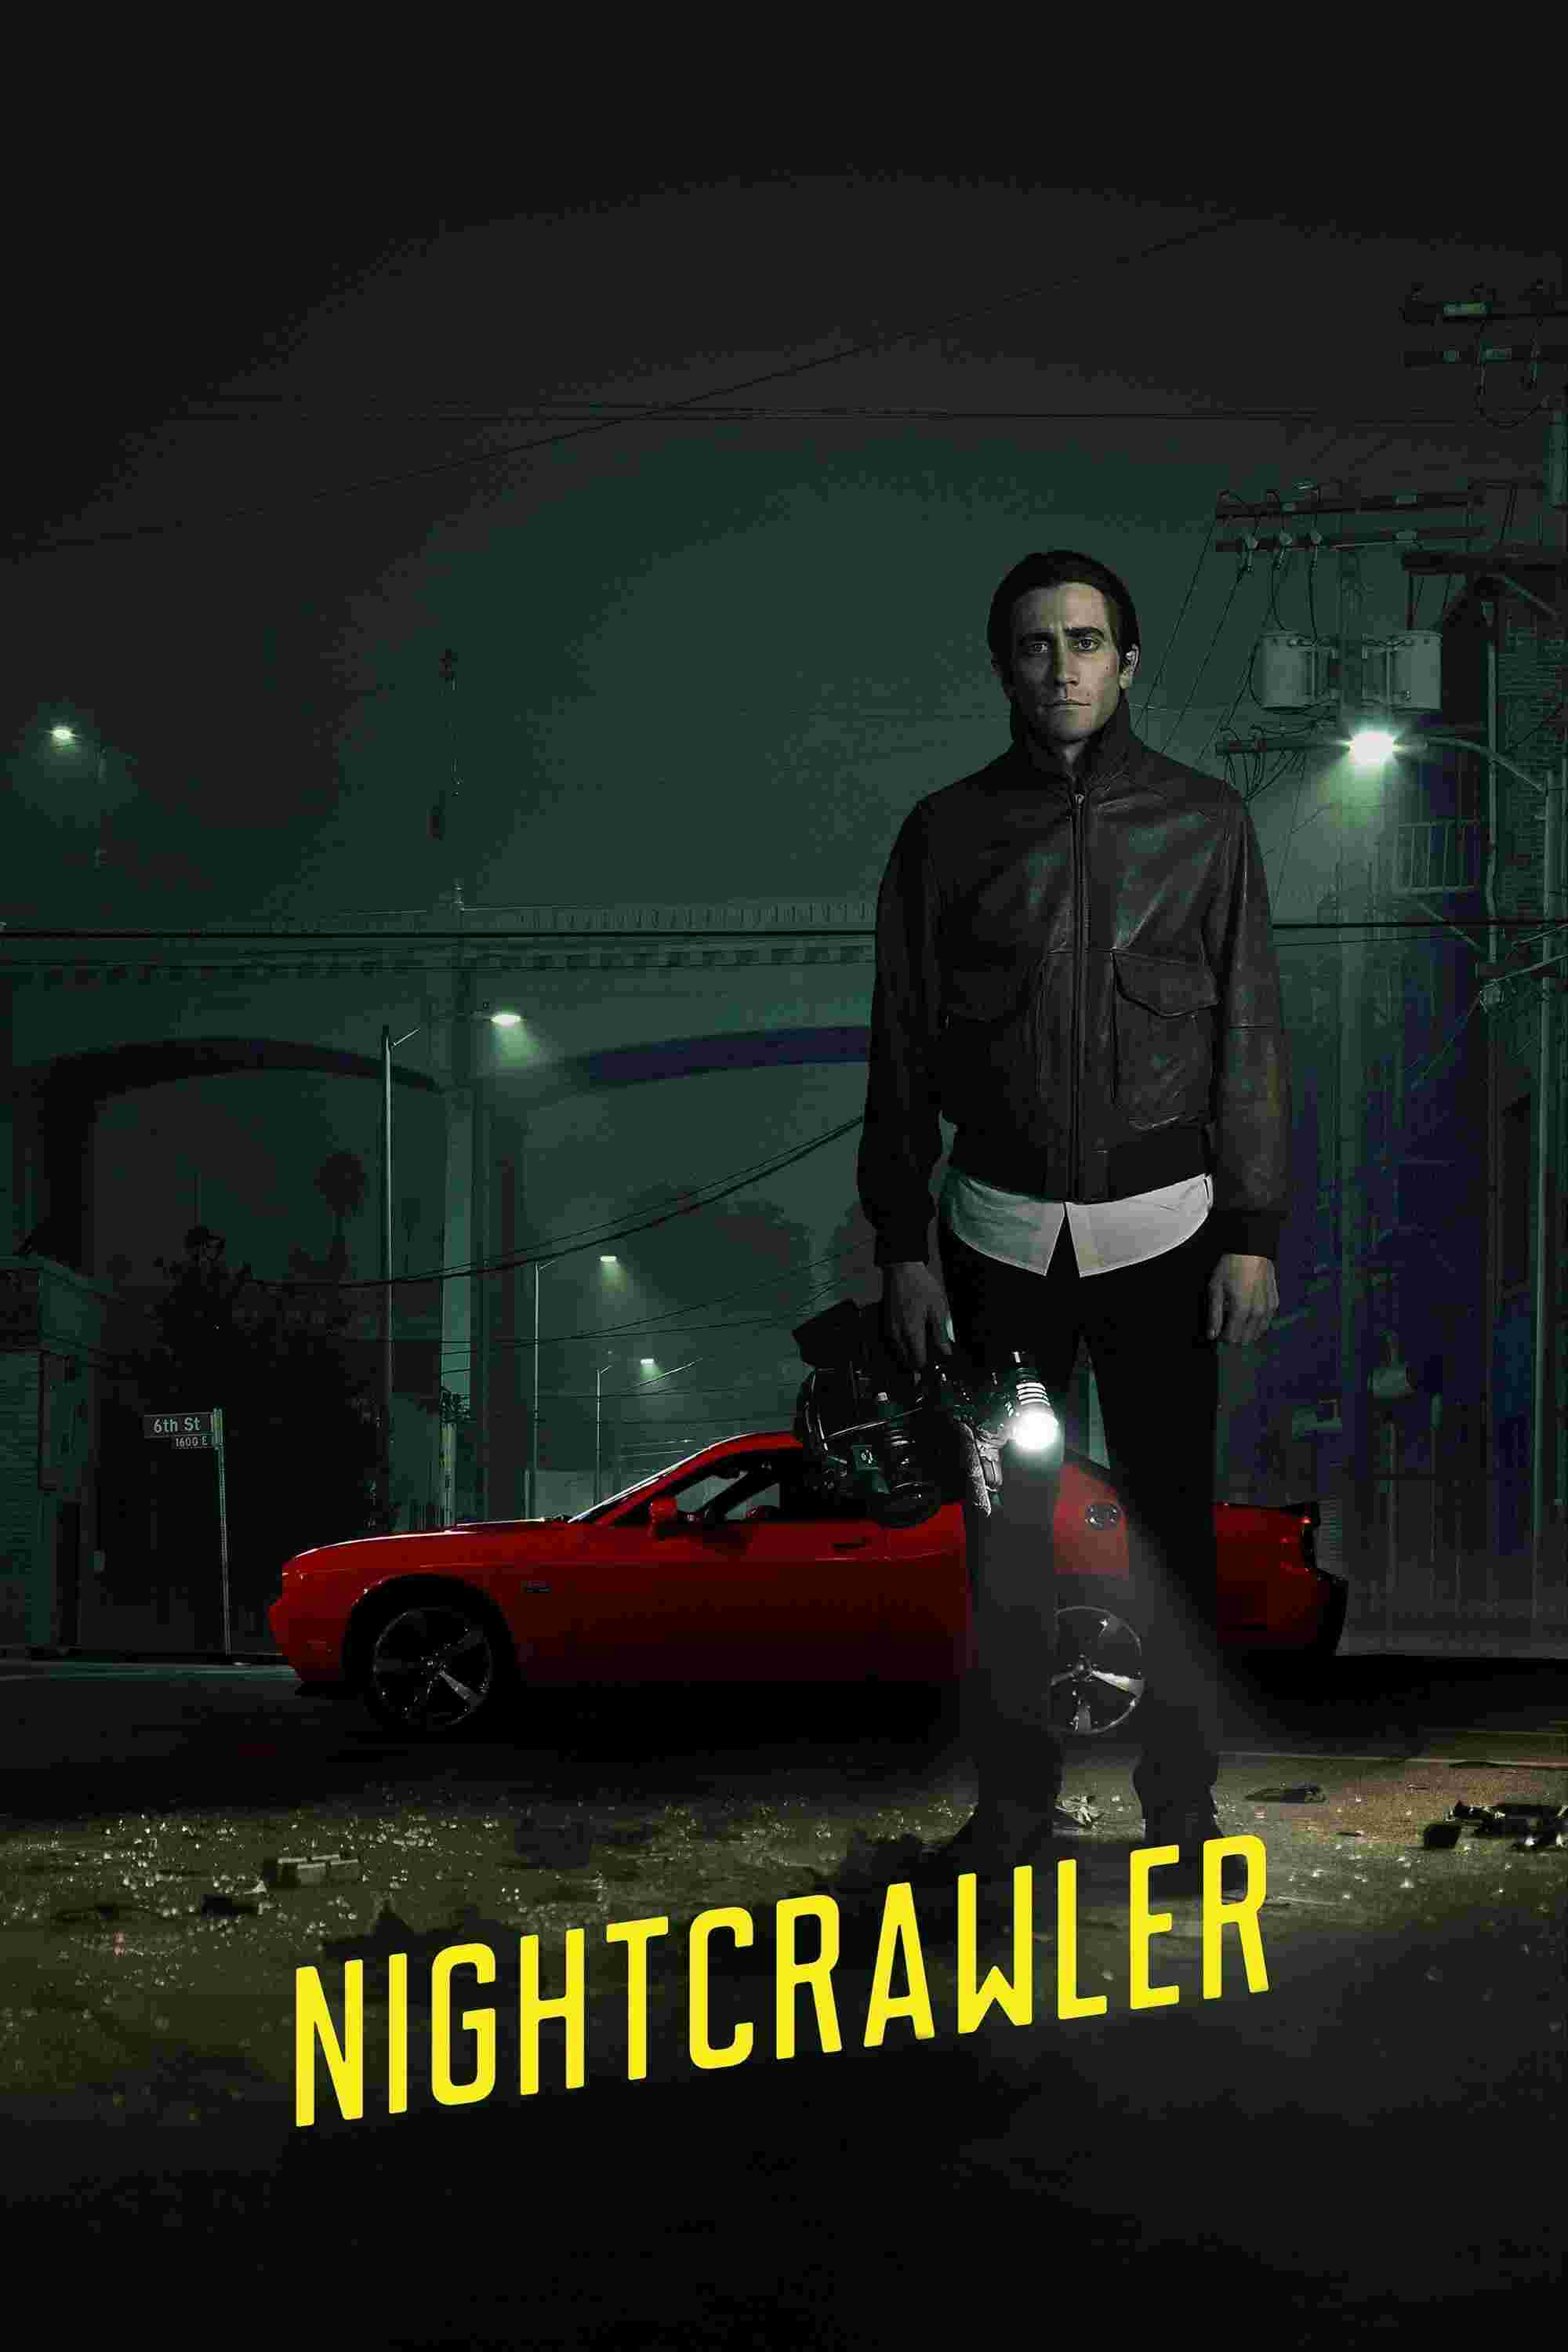 Nightcrawler (2014) Jake Gyllenhaal